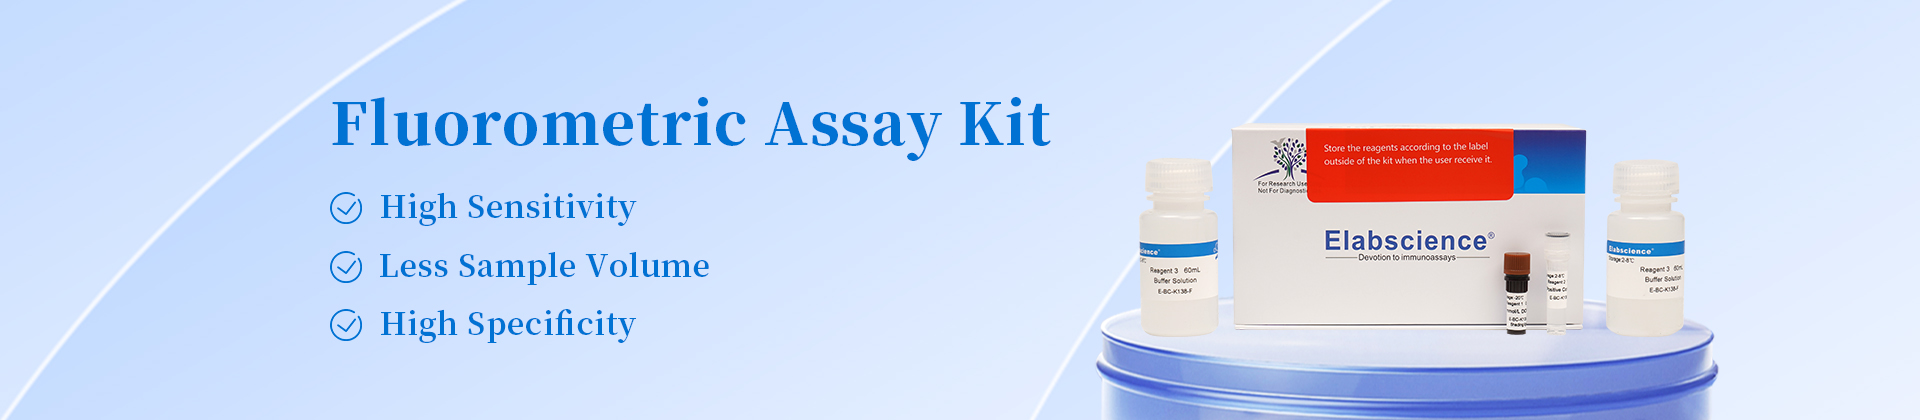 Fluorometric Assay Kit